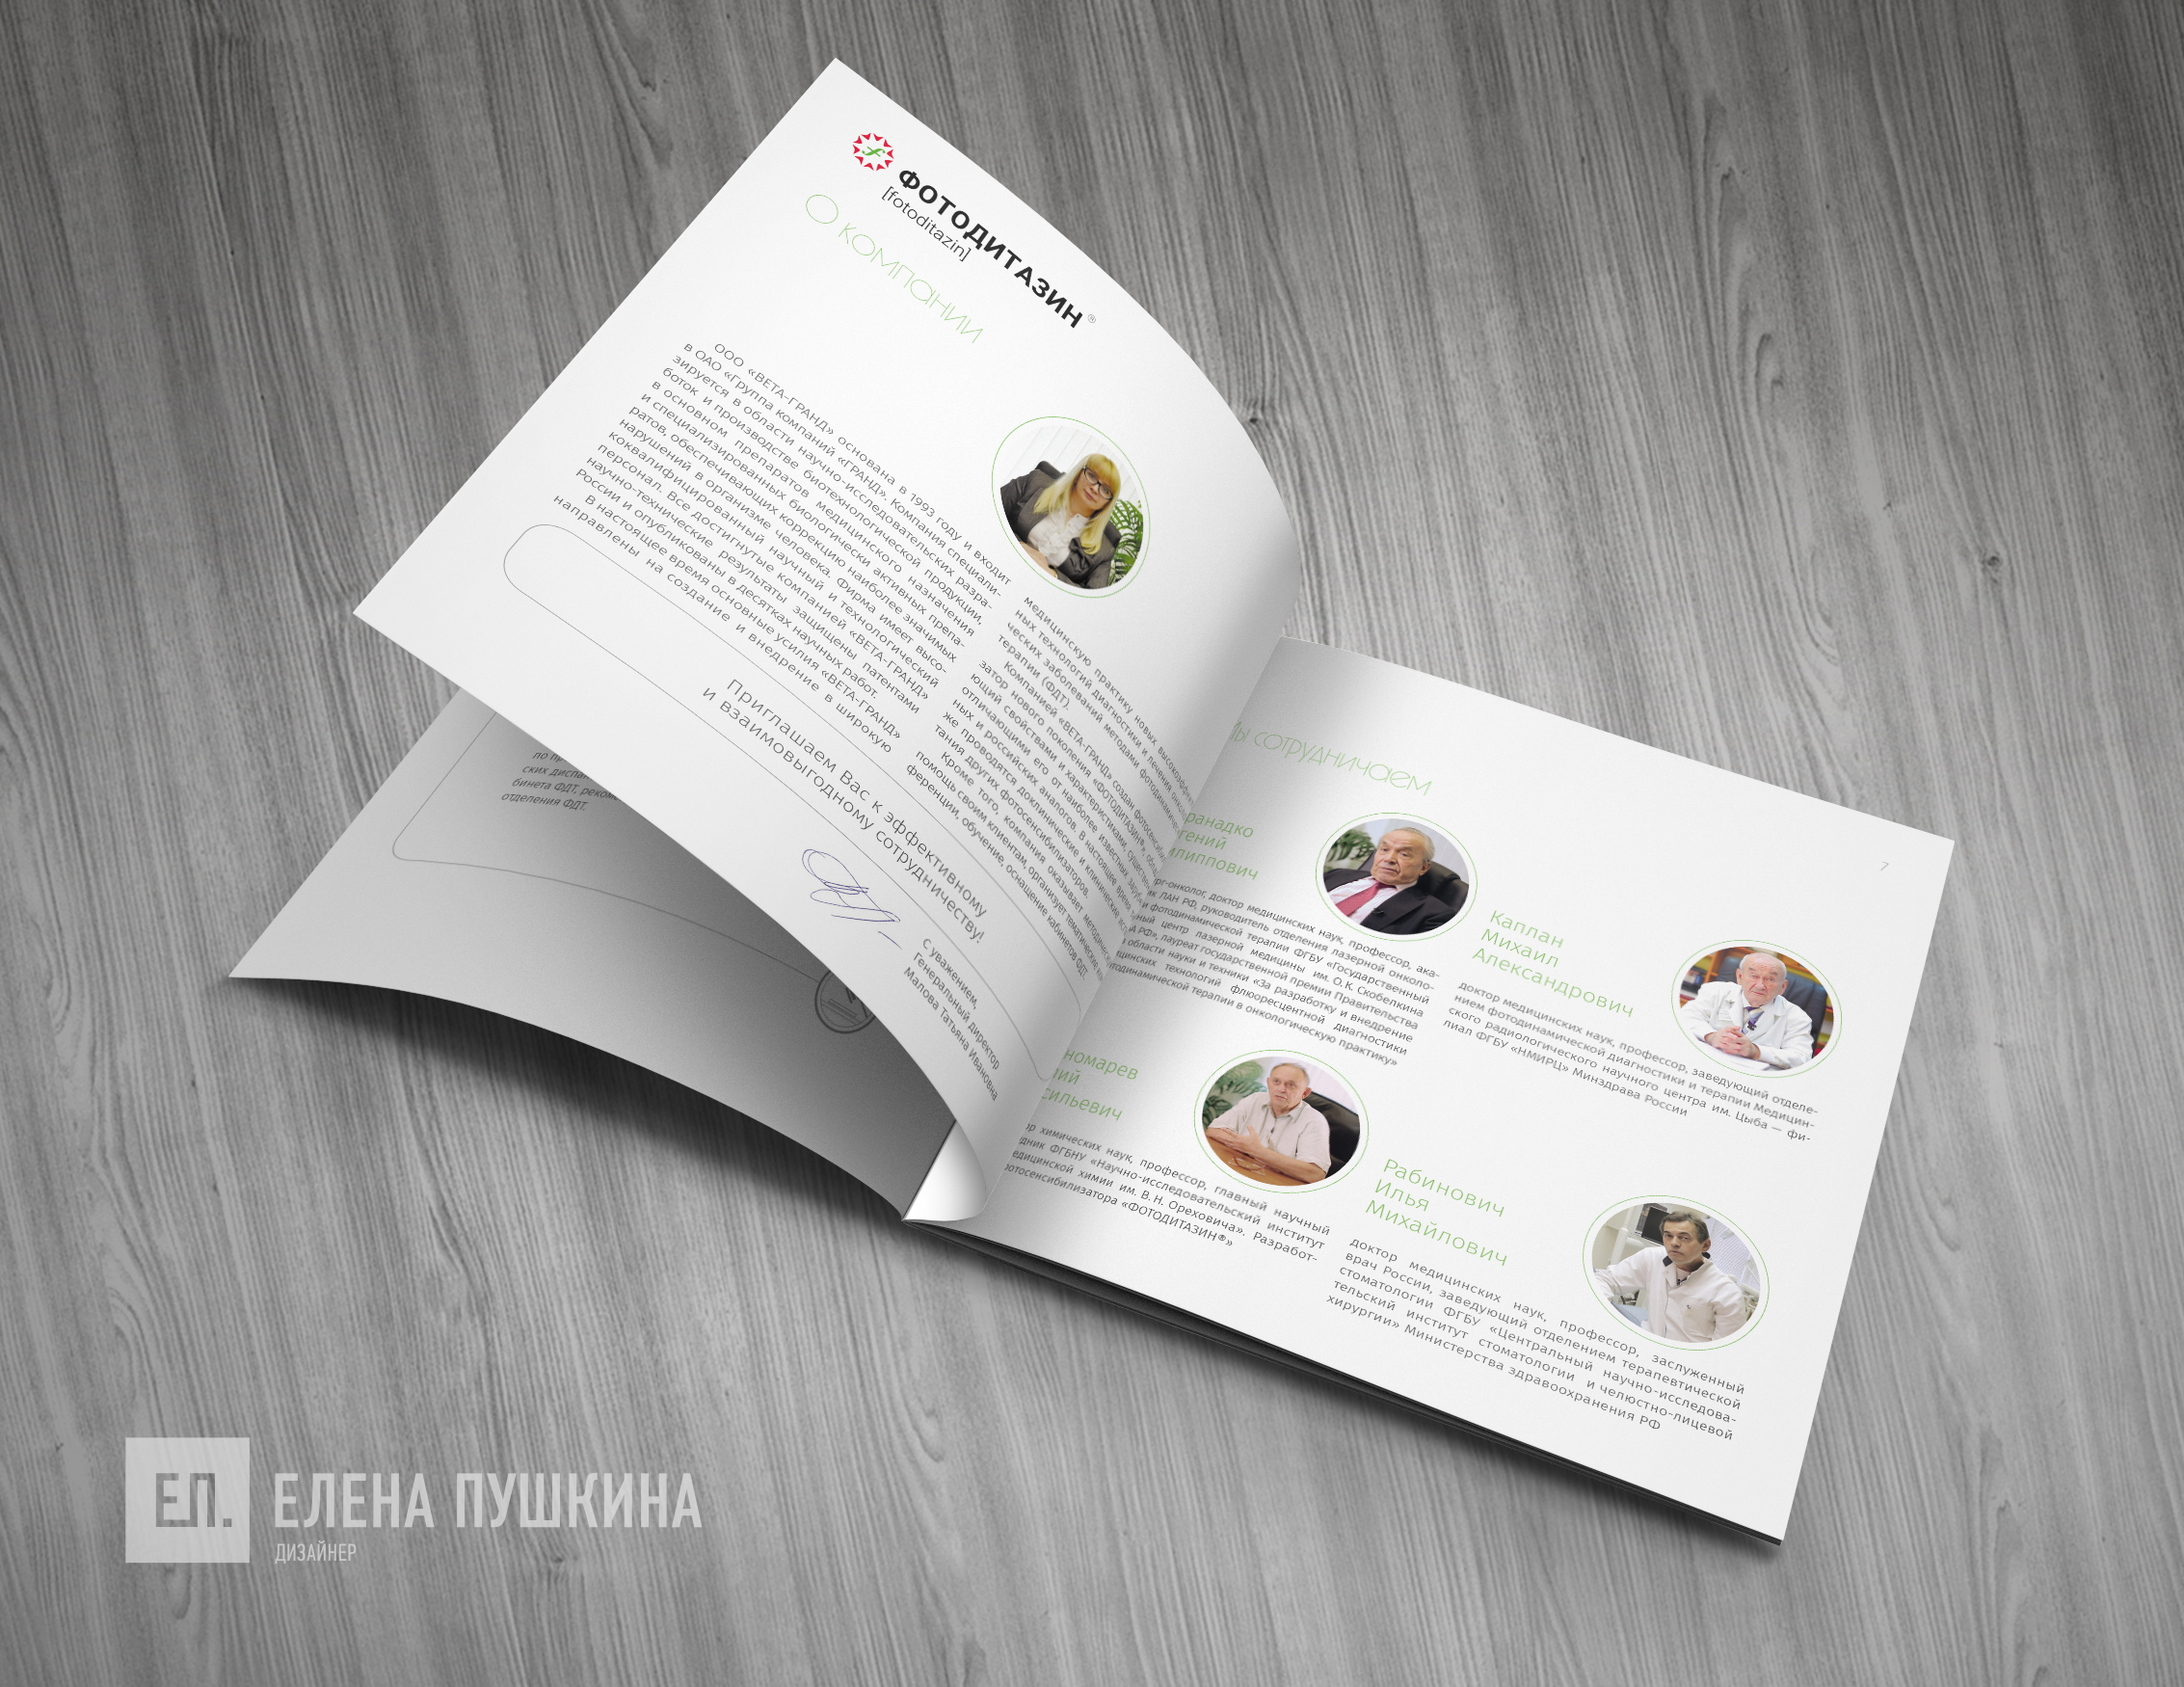 Рекламная брошюра ТМ «ФОТОДИТАЗИН» — дизайн с «нуля» обложки, макета, инфографики и вёрстка брошюры Дизайн каталогов Портфолио